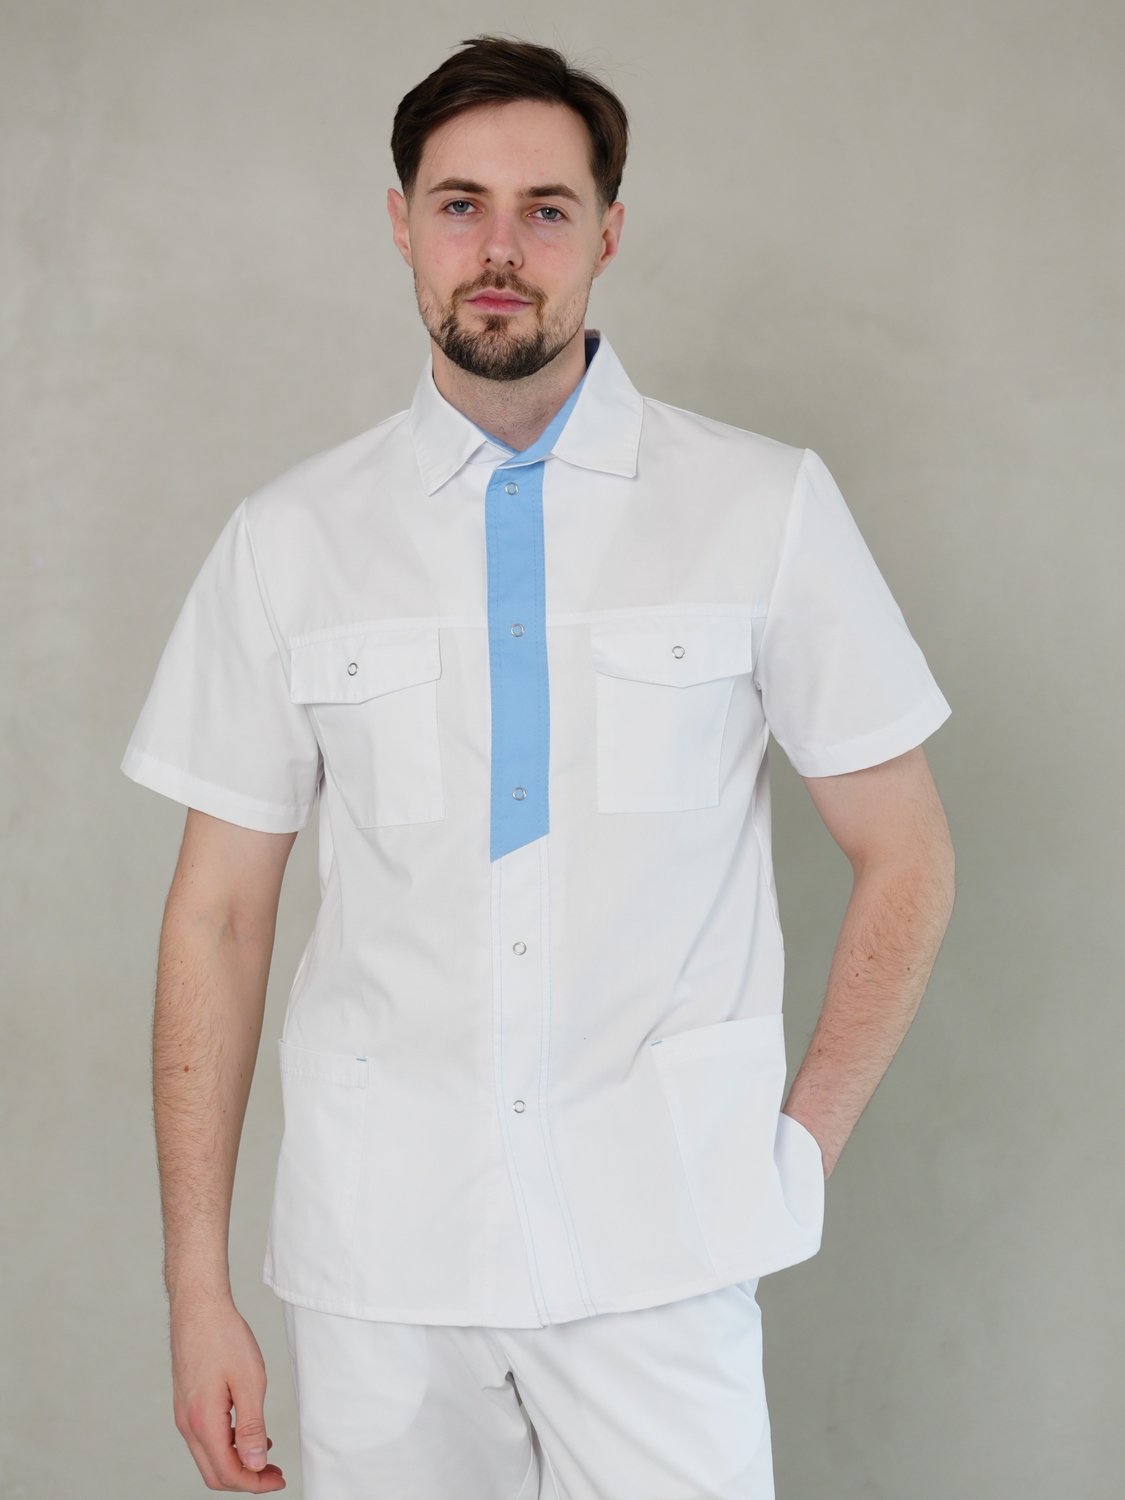 Чоловічий медичний костюм 14-03 білий з блакитним оздобленням